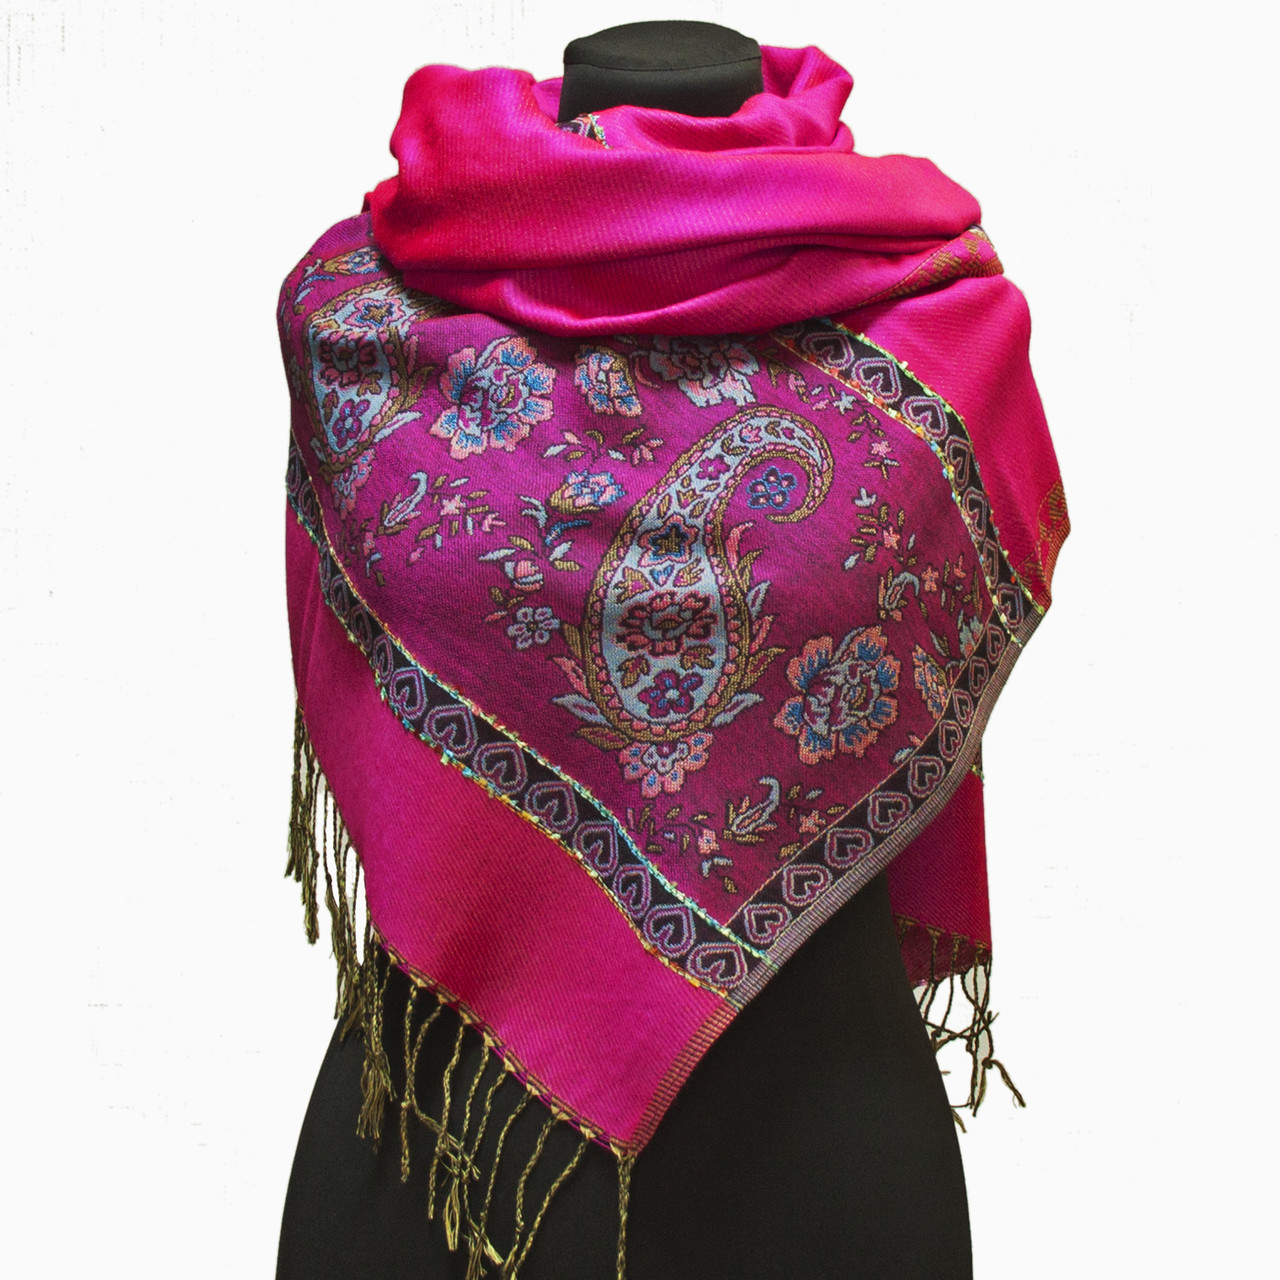 Жіночий шарф палантин рожевий з малиновим стильний індійський 180*70 см